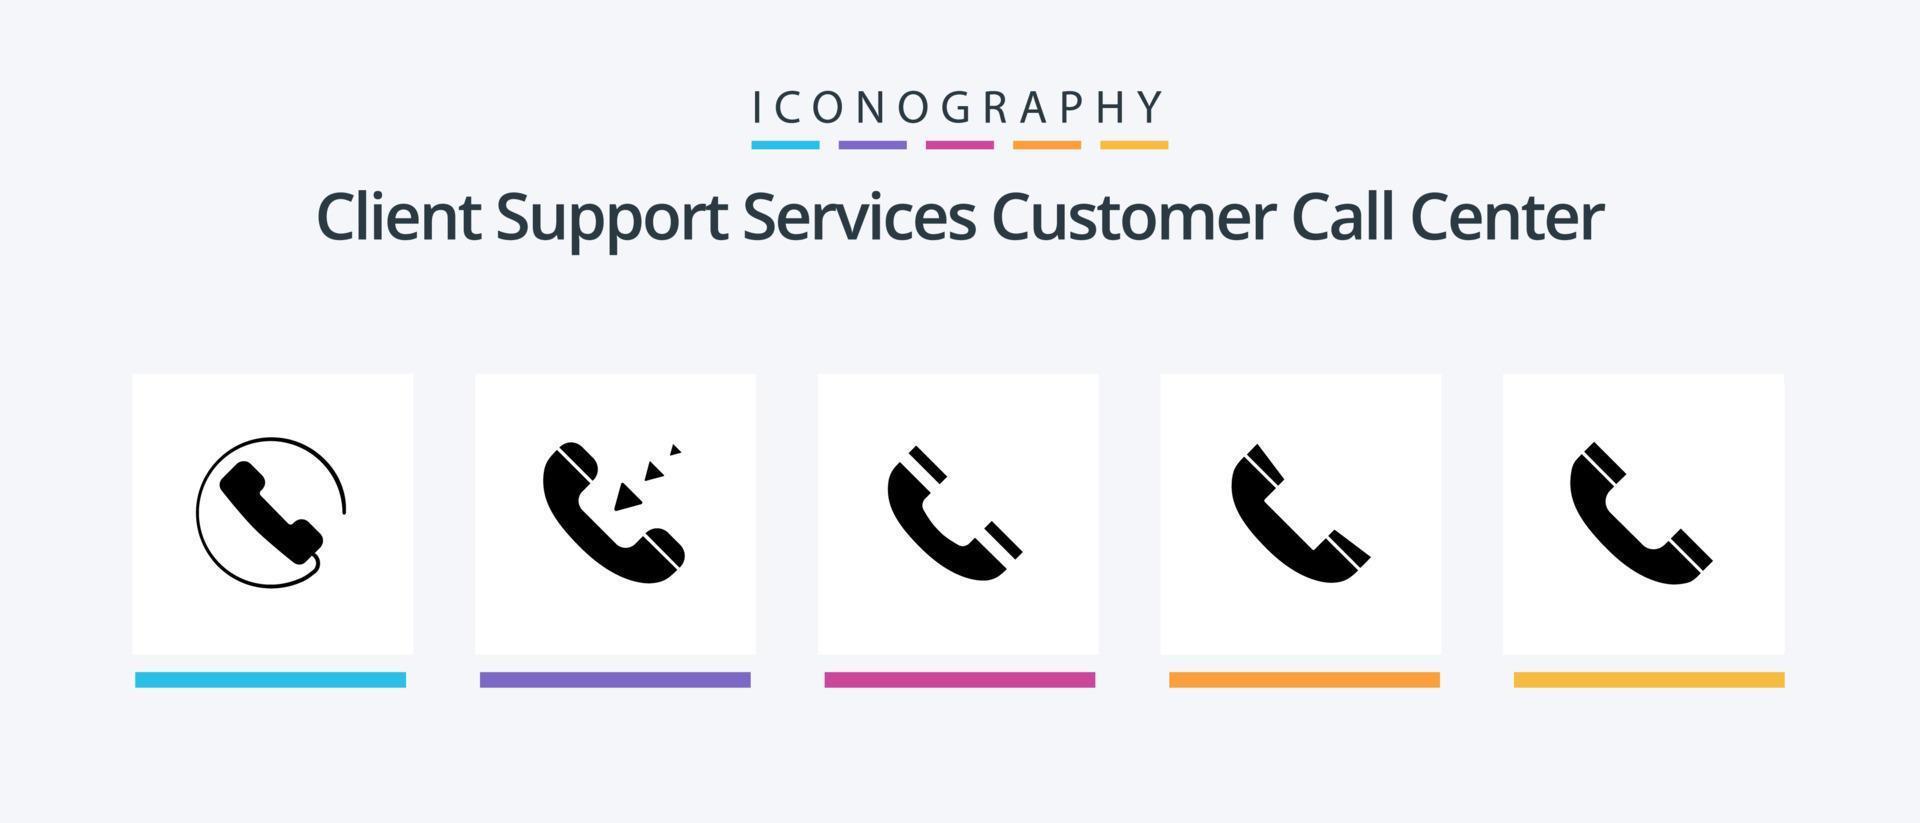 llame al paquete de iconos de glifo 5 que incluye teléfono. llamar. interfaz. teléfono. contacto. diseño de iconos creativos vector